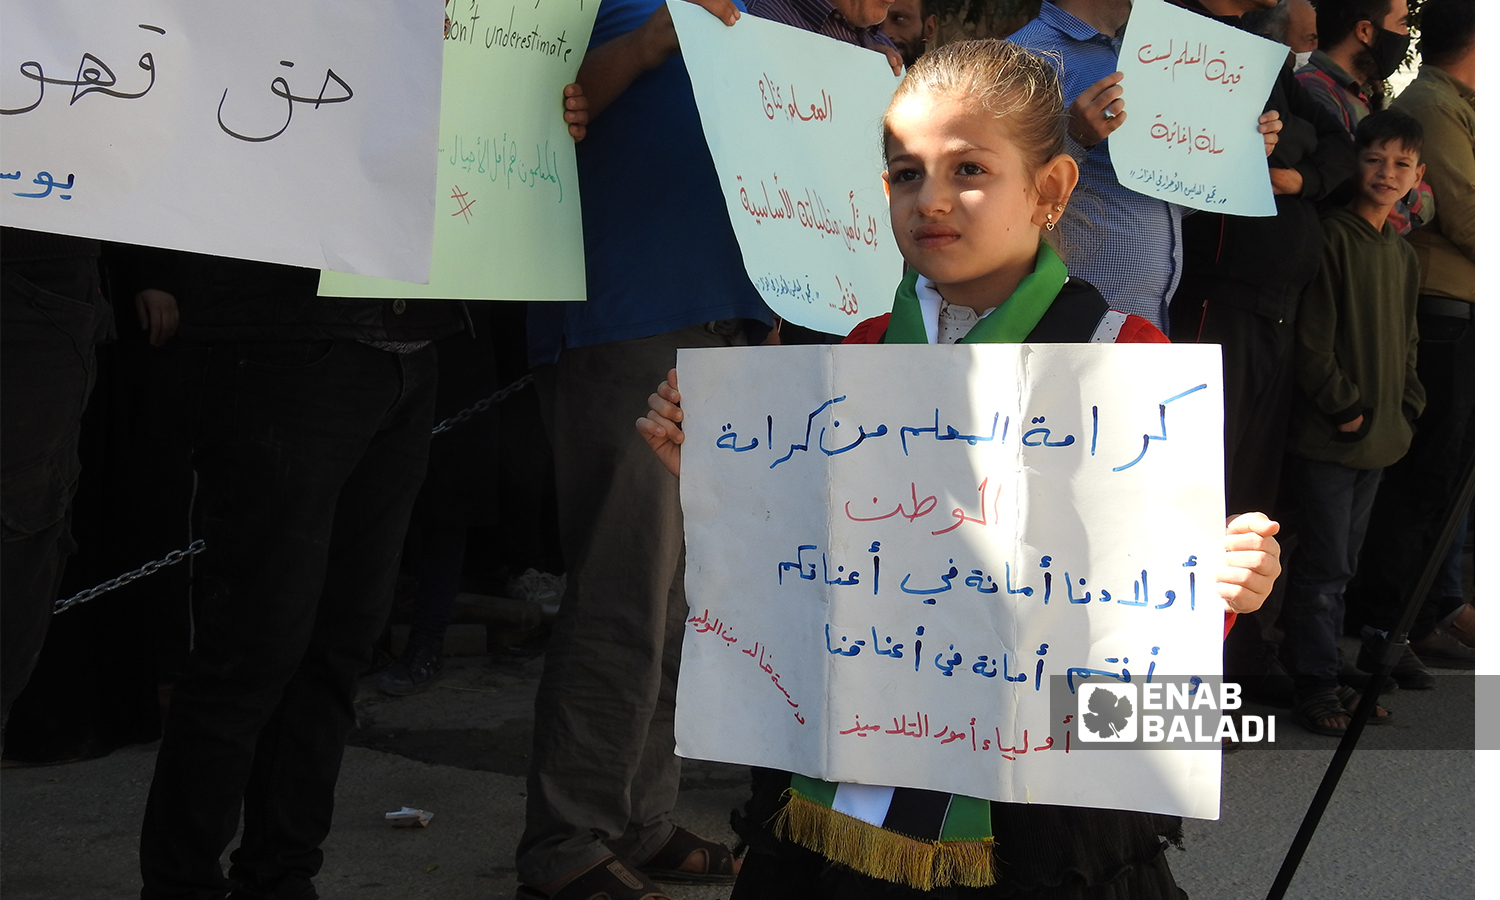 طفلة تحمل لافتة كتب عليها "كرامة المعلم من كرامة المواطن "  في مدينة اعزاز بريف حلب 21 تشرين الأول 2021 (عنب بلدي - وليد عثمان)